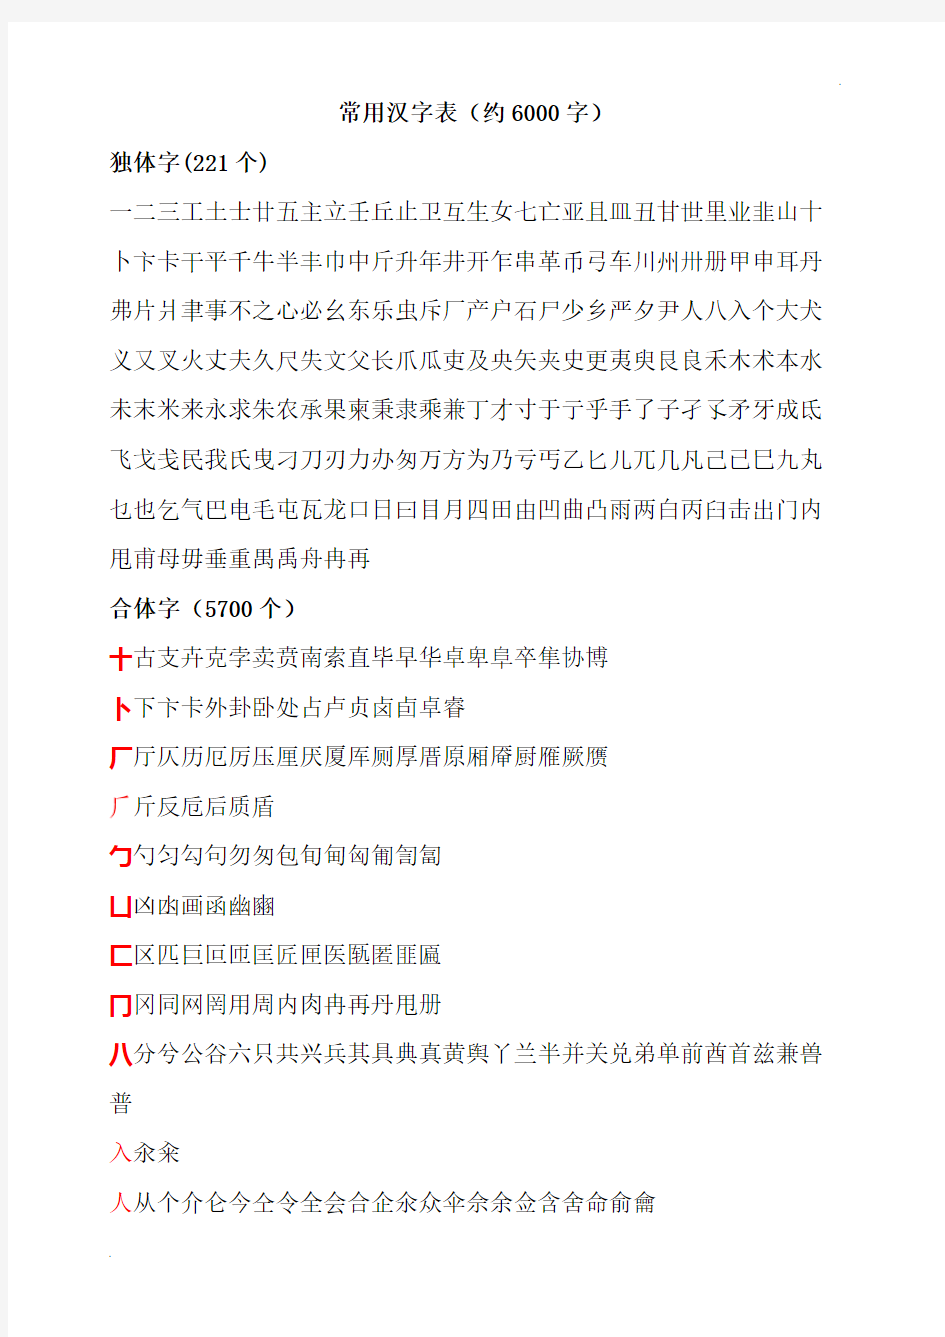 常用汉字偏旁归类表 (2)